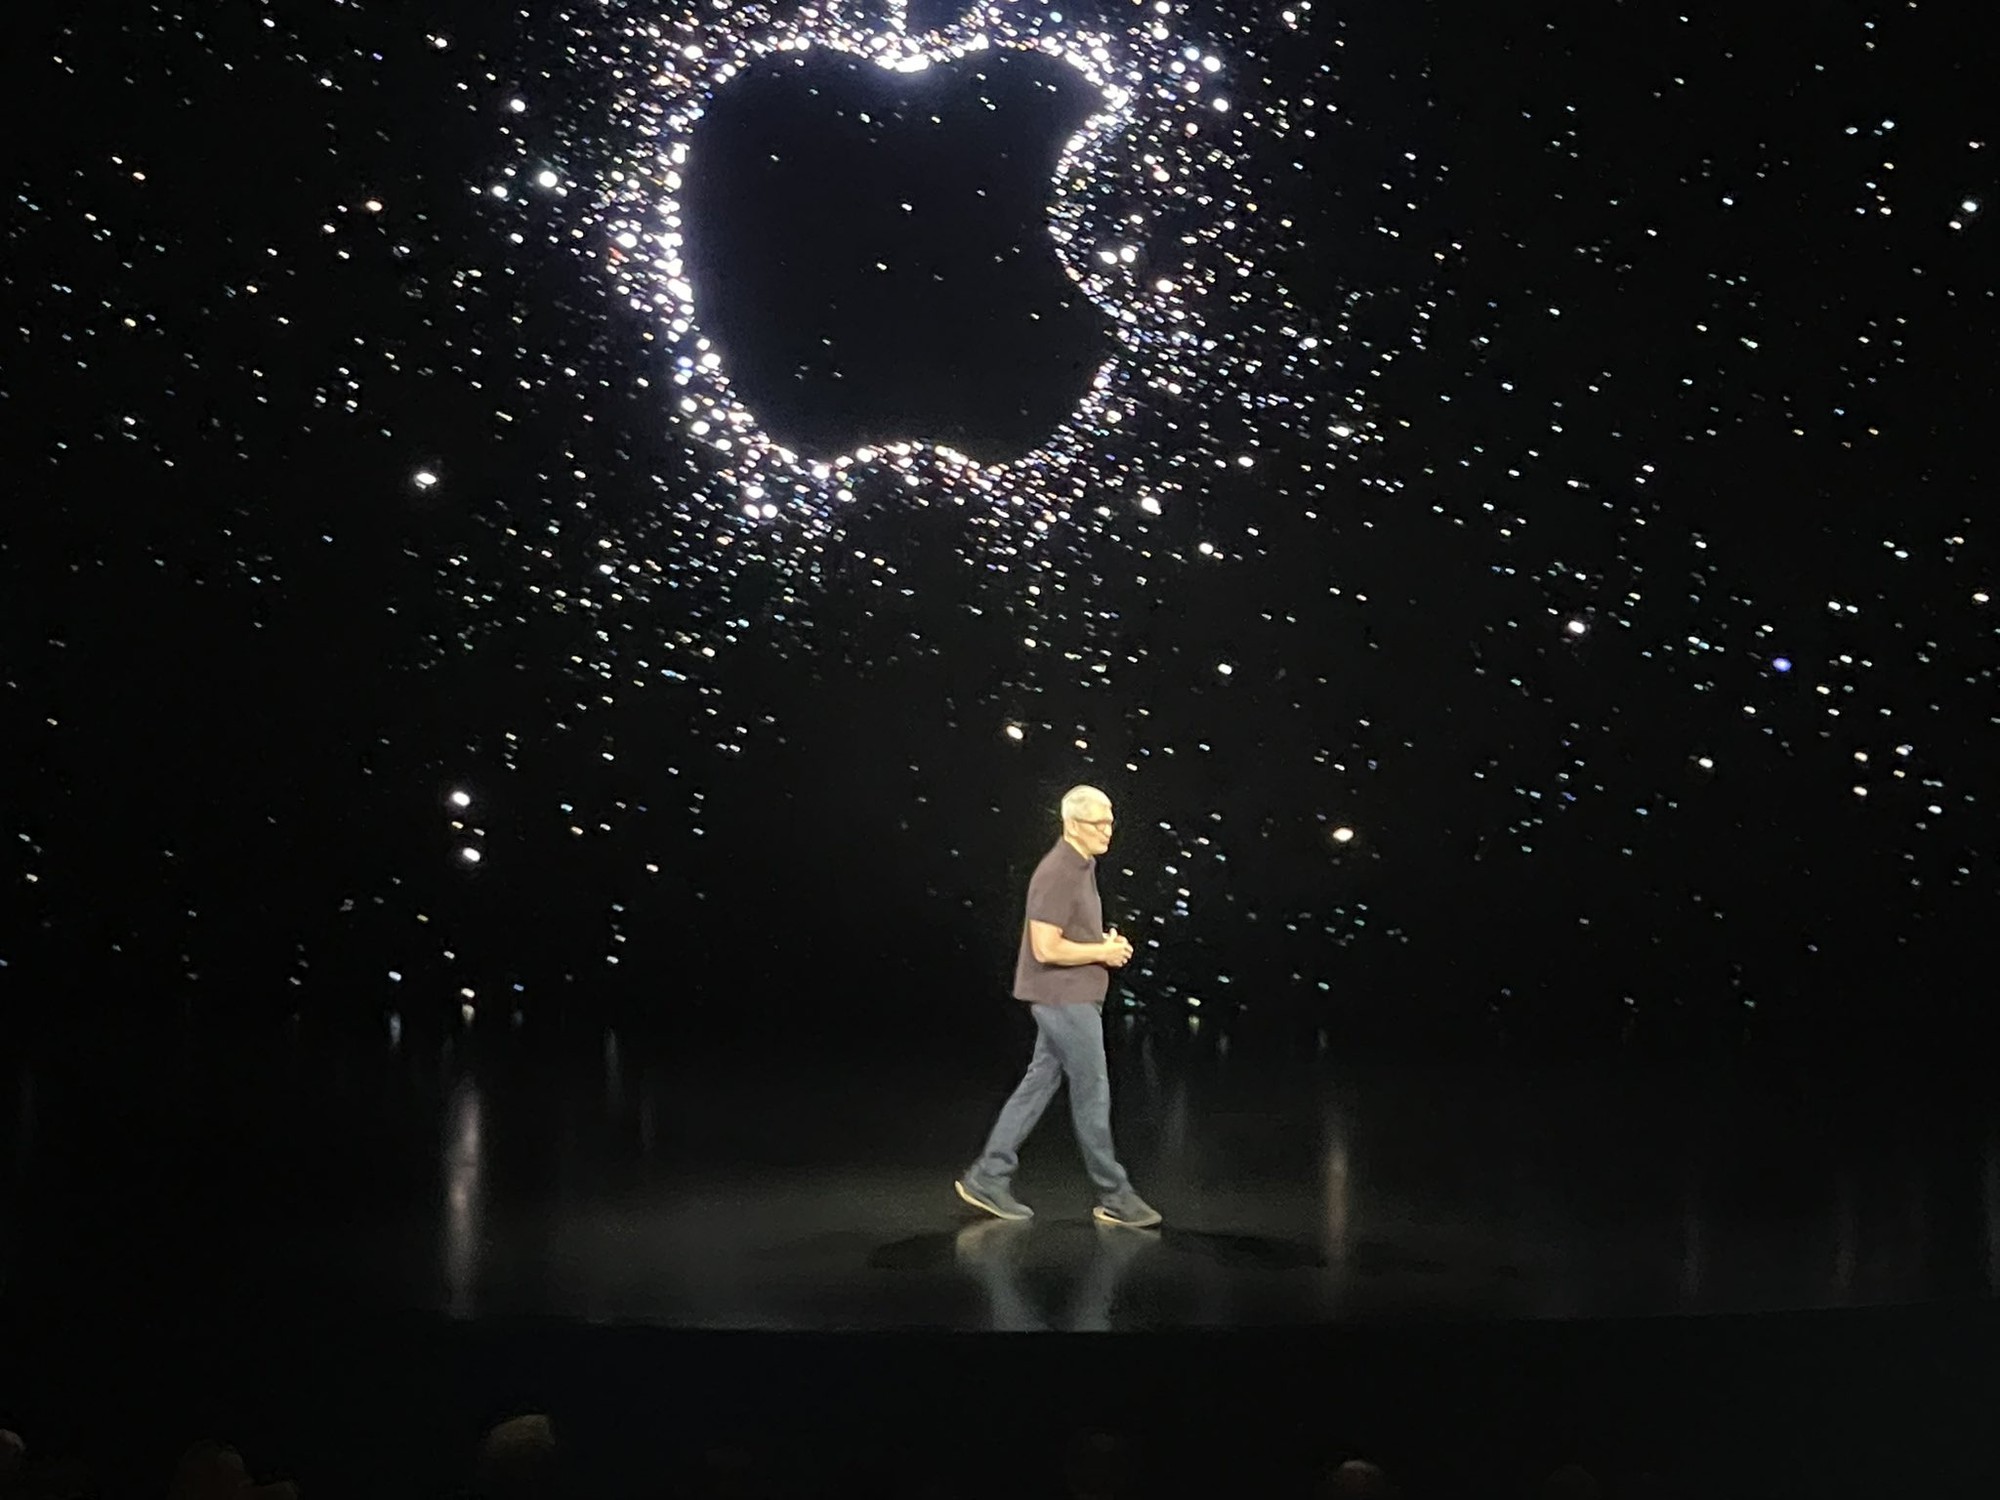 Sự kiện ra mắt iPhone 15 bất ngờ được hé lộ: Apple phá vỡ truyền thống lâu đời? - Ảnh 1.